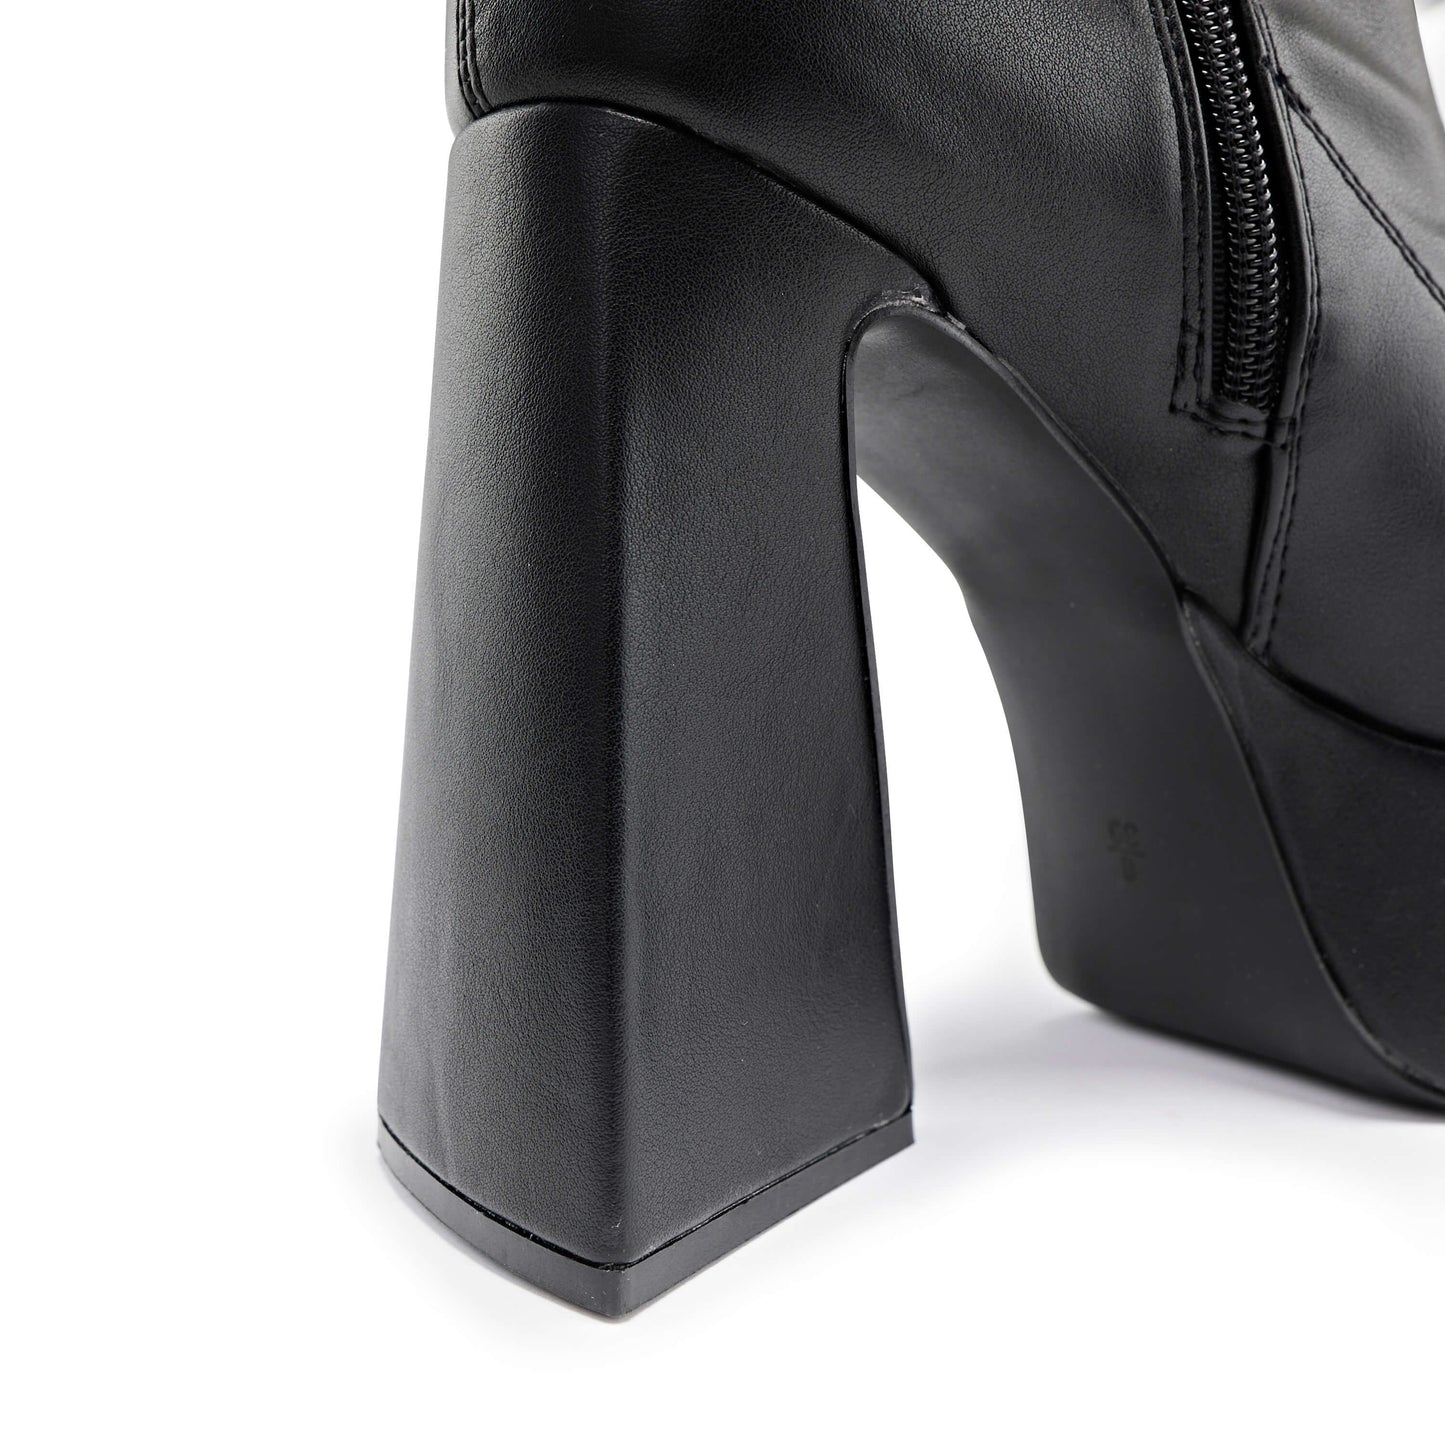 Marfa Black Heeled Long Boots